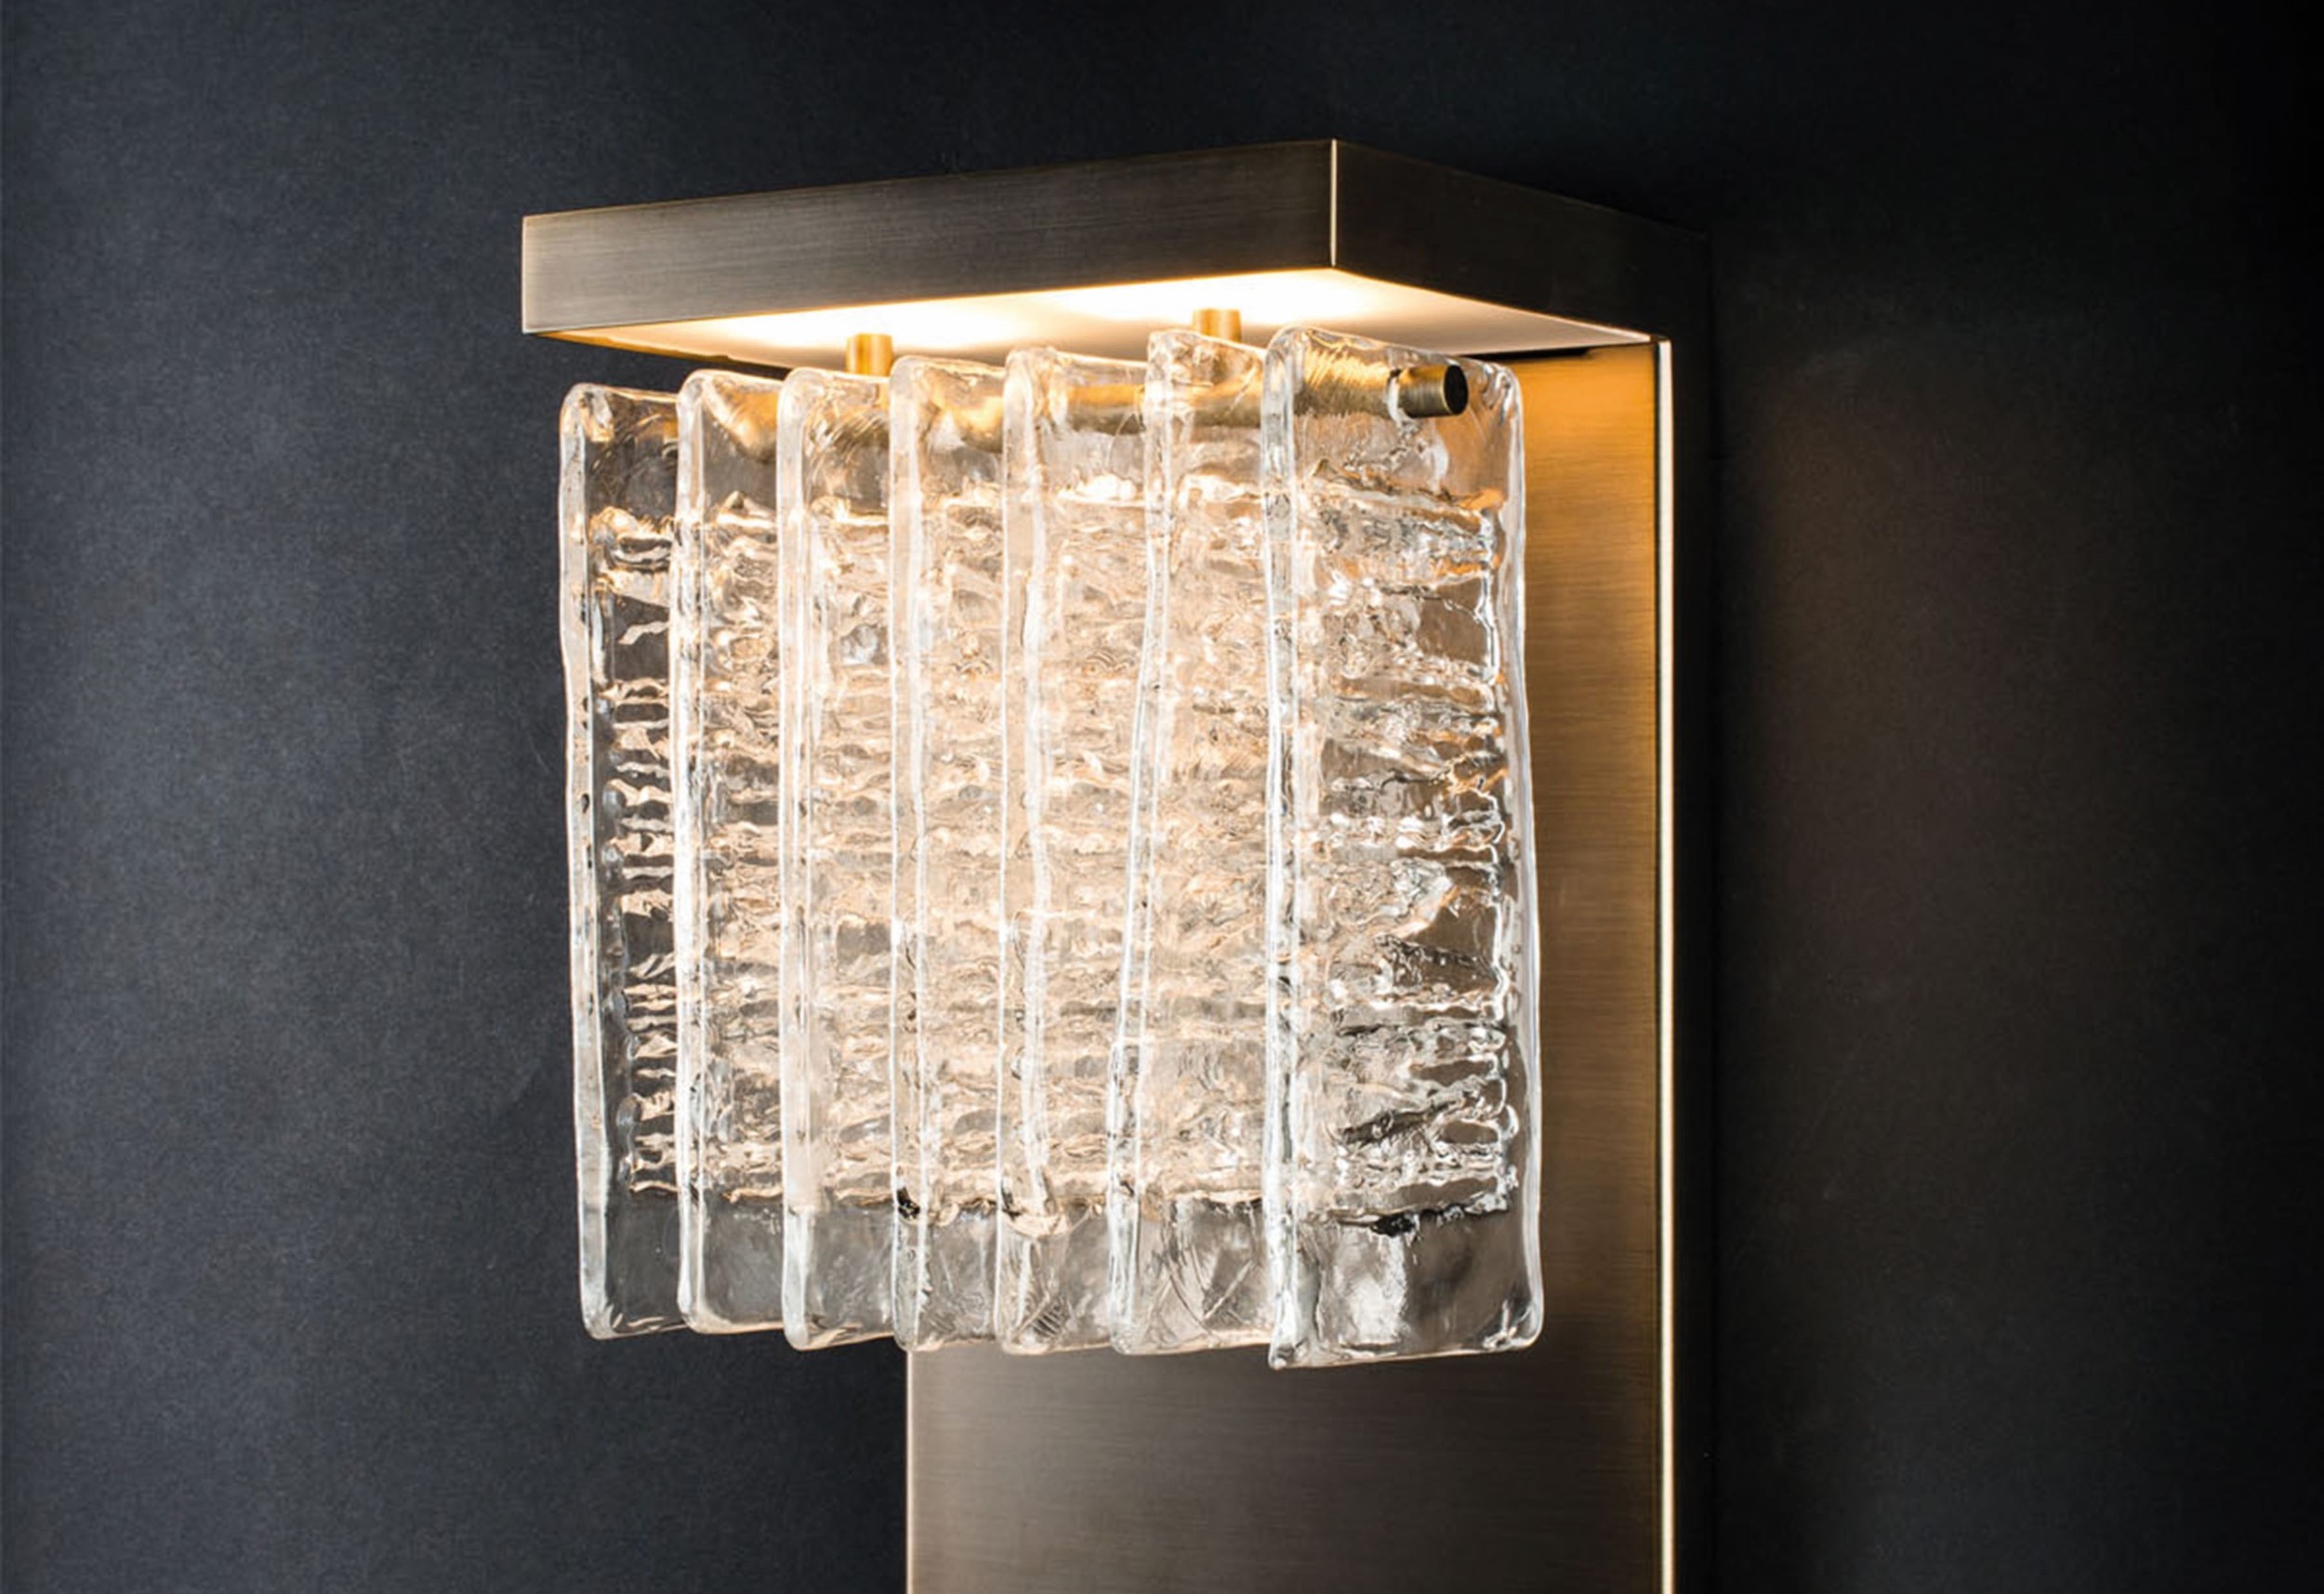 與法國燈飾品牌 Veronese 合作系列之一的ICE壁燈，為品牌旗下的經典代表。